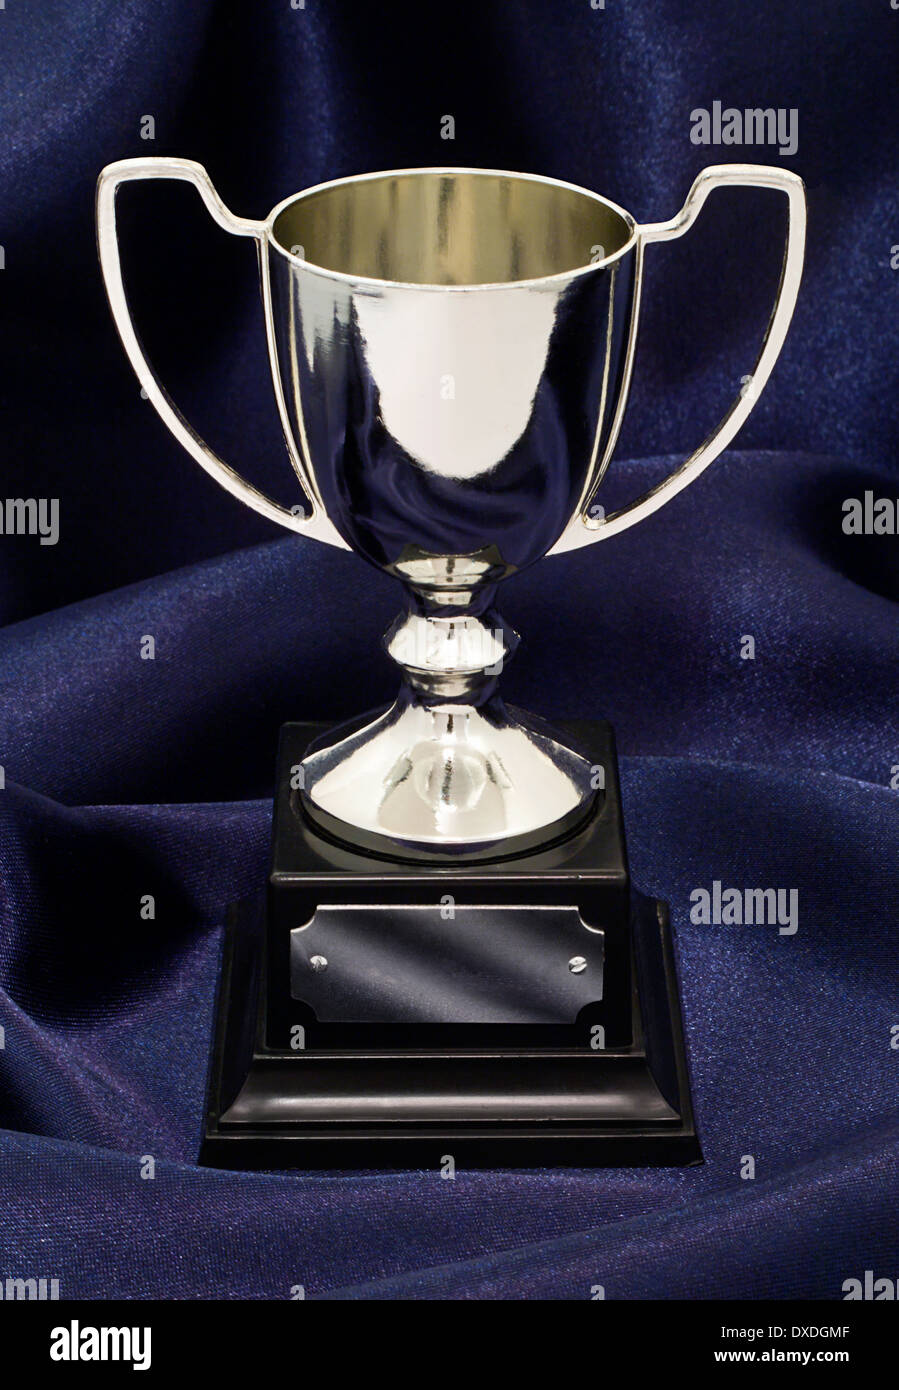 Eine silberne Gewinner Trophäe auf ein blauer Seide Hintergrund tolles Konzept für Leistung, Erfolg oder Gewinn eines Wettkampfs oder Award. Stockfoto